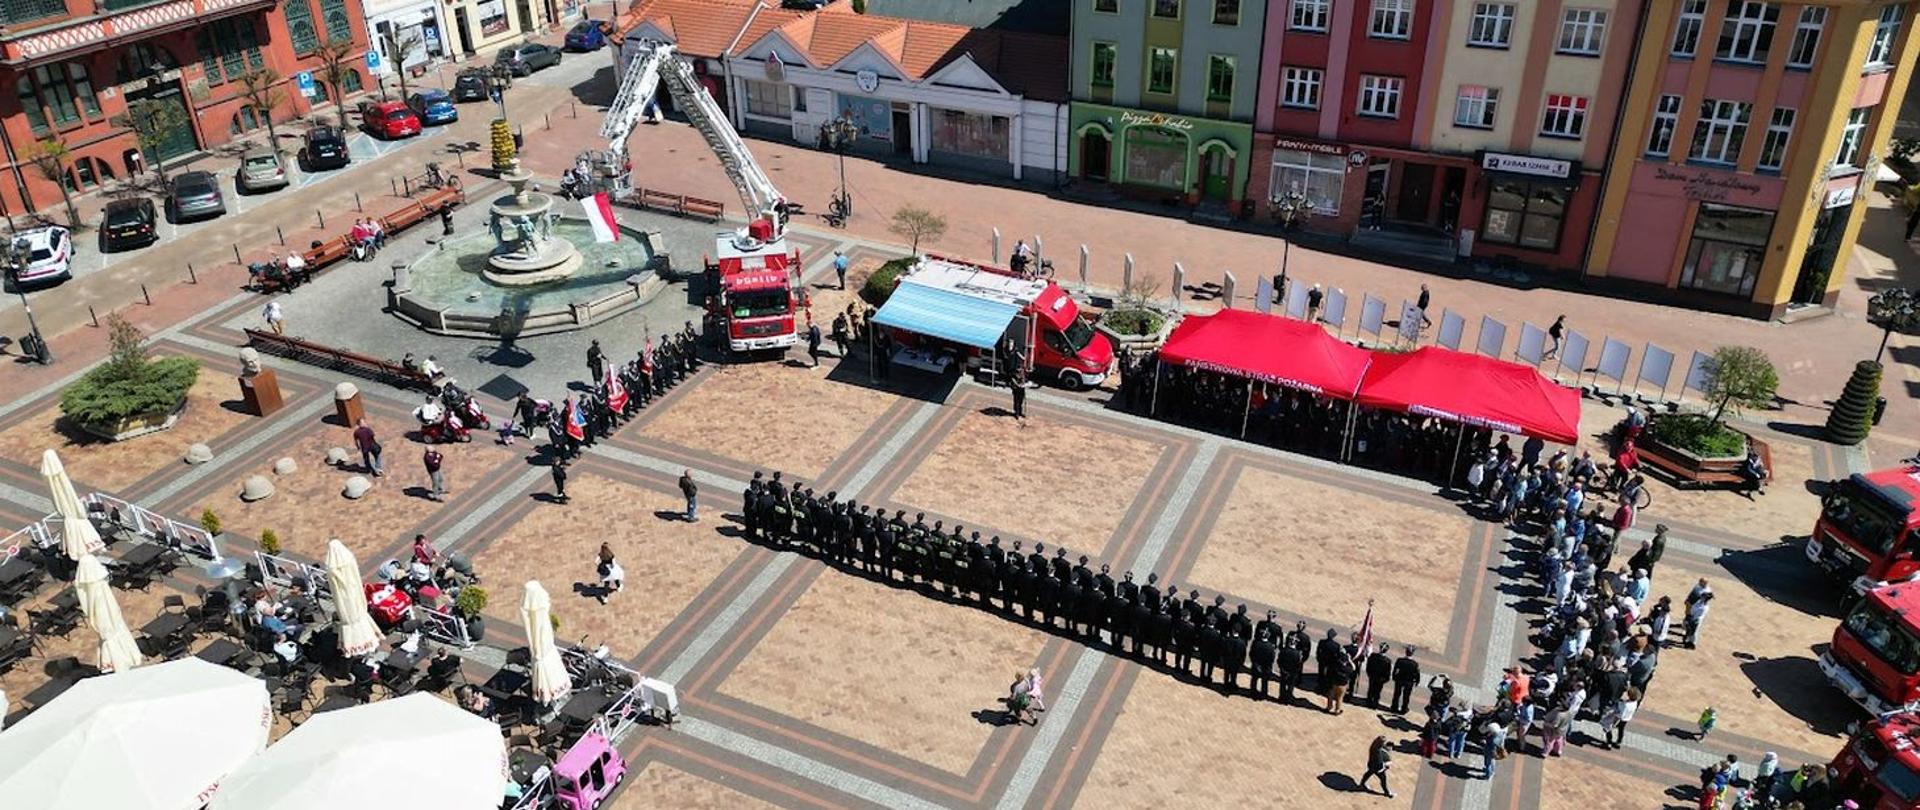 Ujęcie z drona z wysokości. Widok na płytę Starego Rynku w Chojnicach. W dwuszeregu stoją pododdziały strażaków. Na przeciwko namioty z zaproszonymi gośćmi samochód SDŁ oraz podnośnik na którym powiewa flaga Polski.